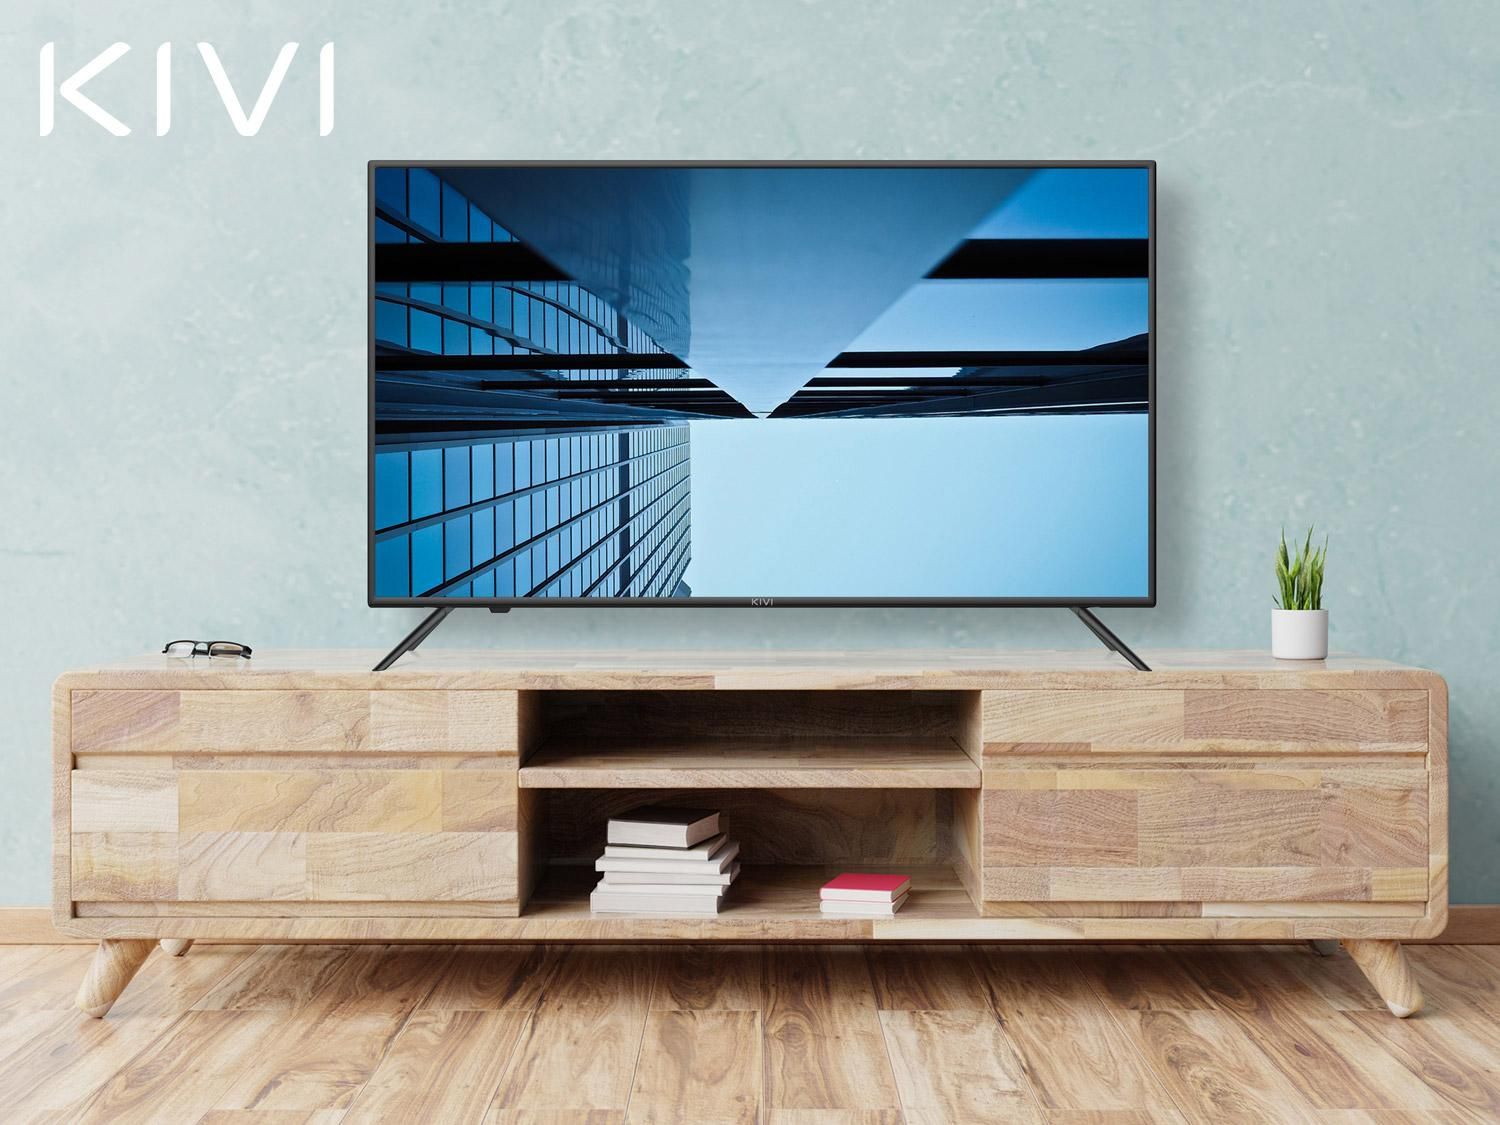 KIVI Smart TV 2020: новые смарт-телевизоры презентовали в Украине – цена и интересные фишки